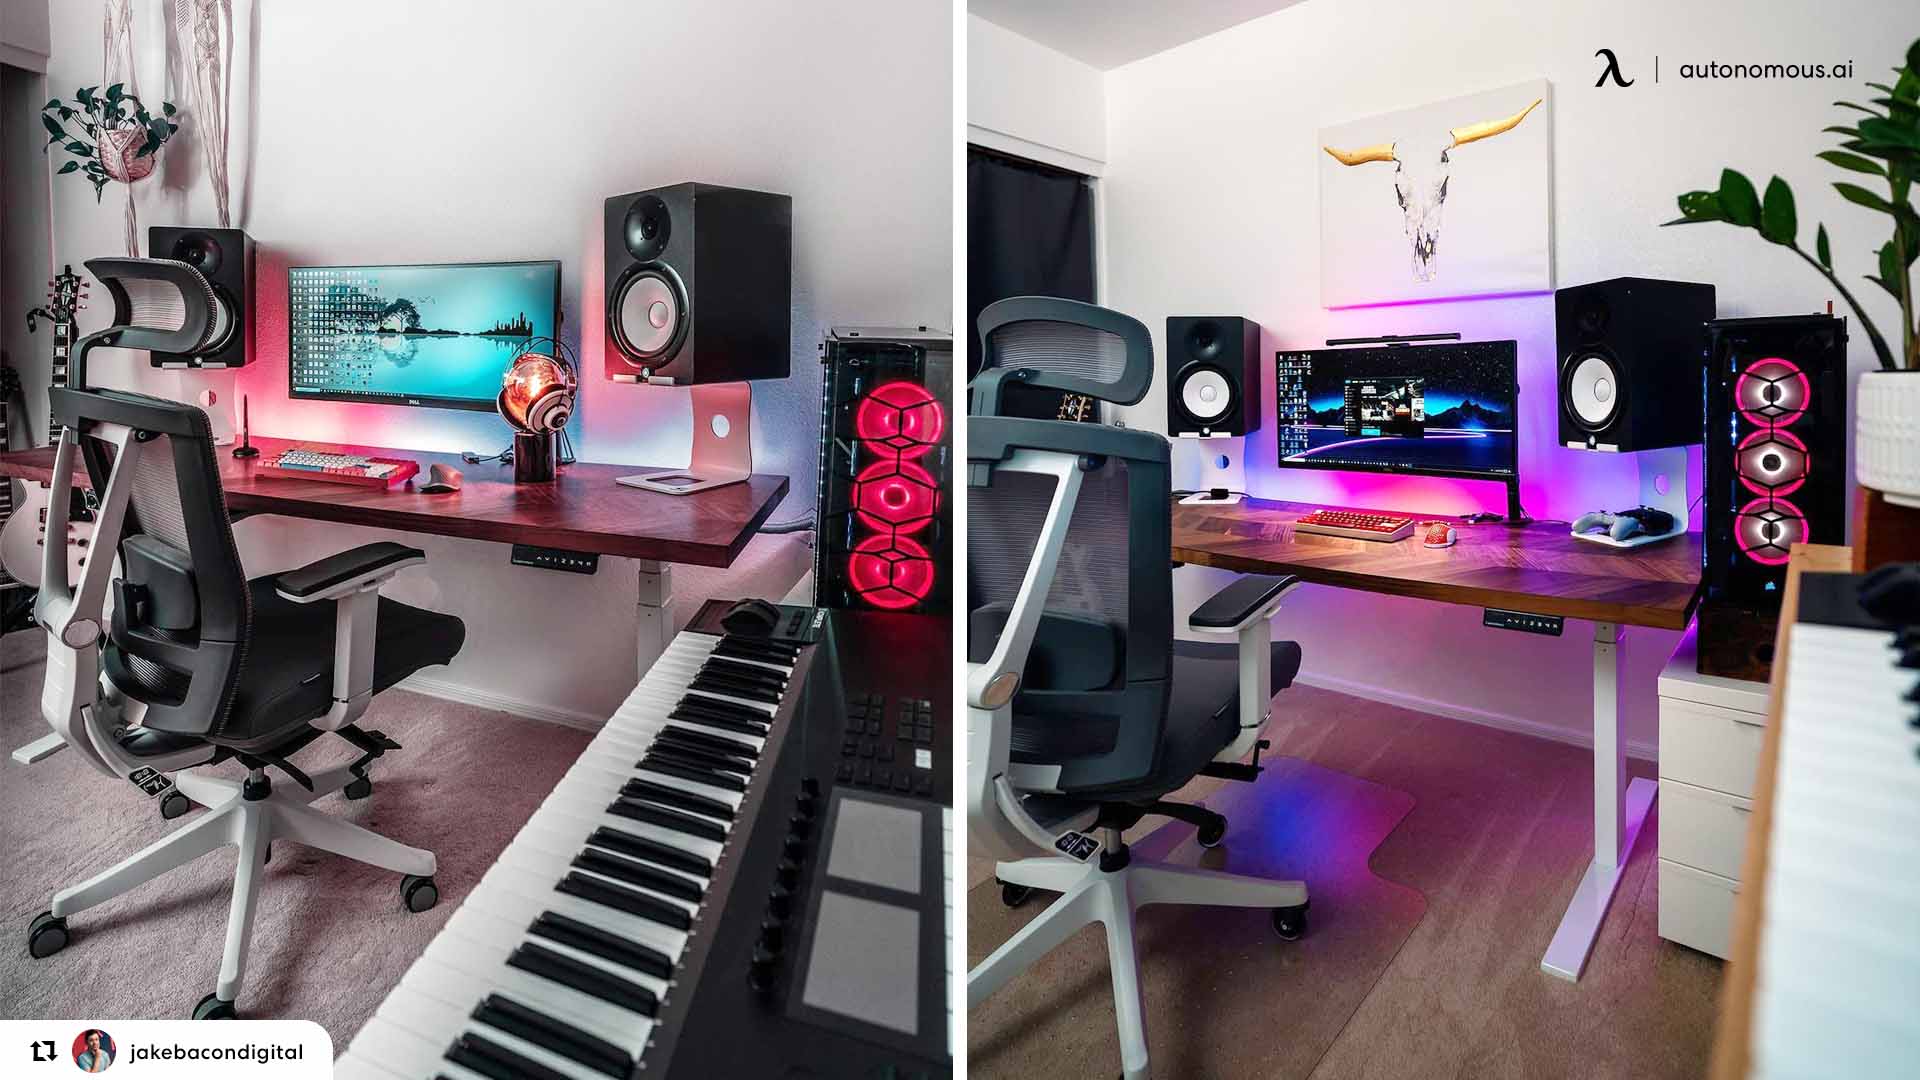 Studio Desk for Less Than $350